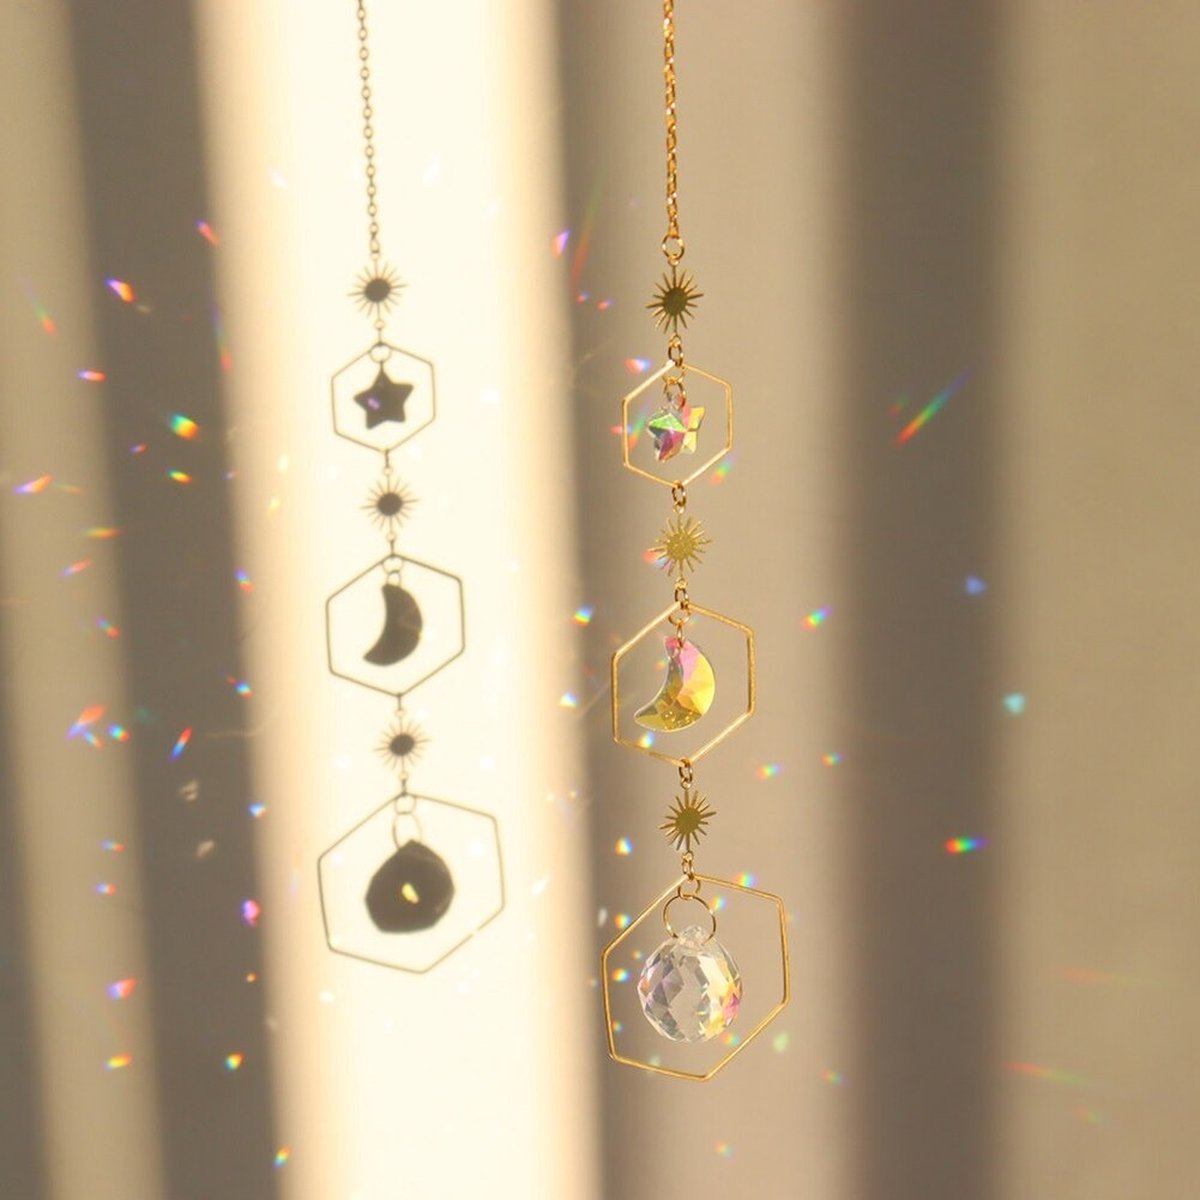 Kristallen zonnevanger - Raamdecoratie lichtprisma - Maan handgemaakte kristallen zonnevanger